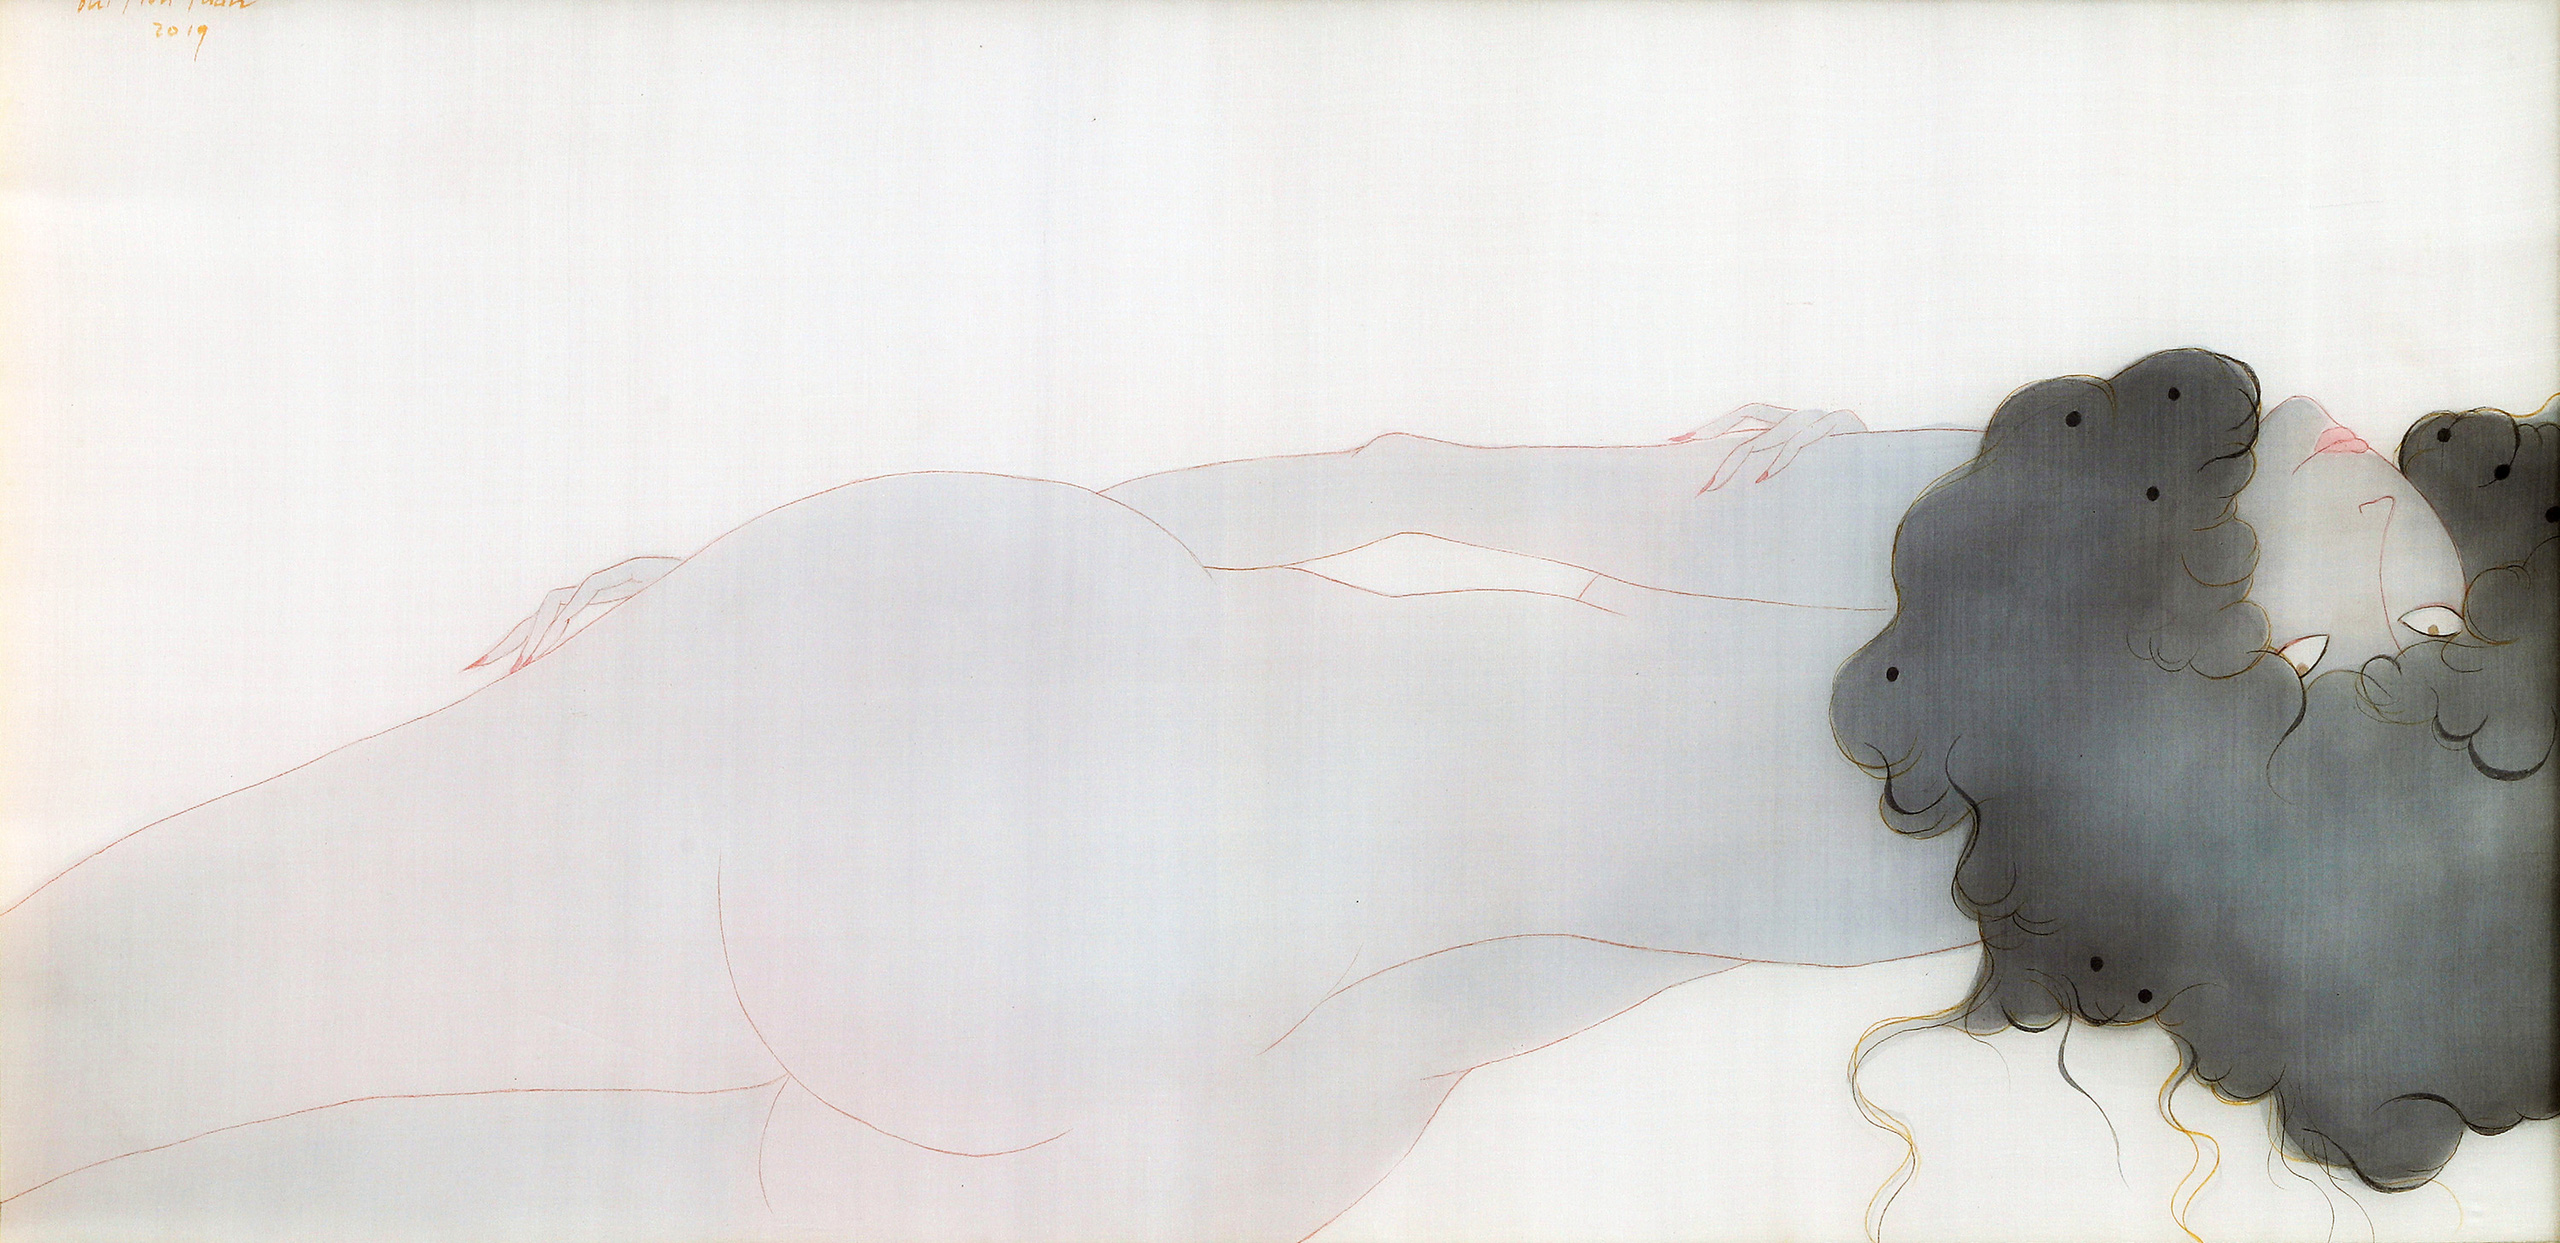 Ngắm tân mỹ nhân thanh thoát trong tranh lụa của Bùi Tiến Tuấn - Ảnh 2.